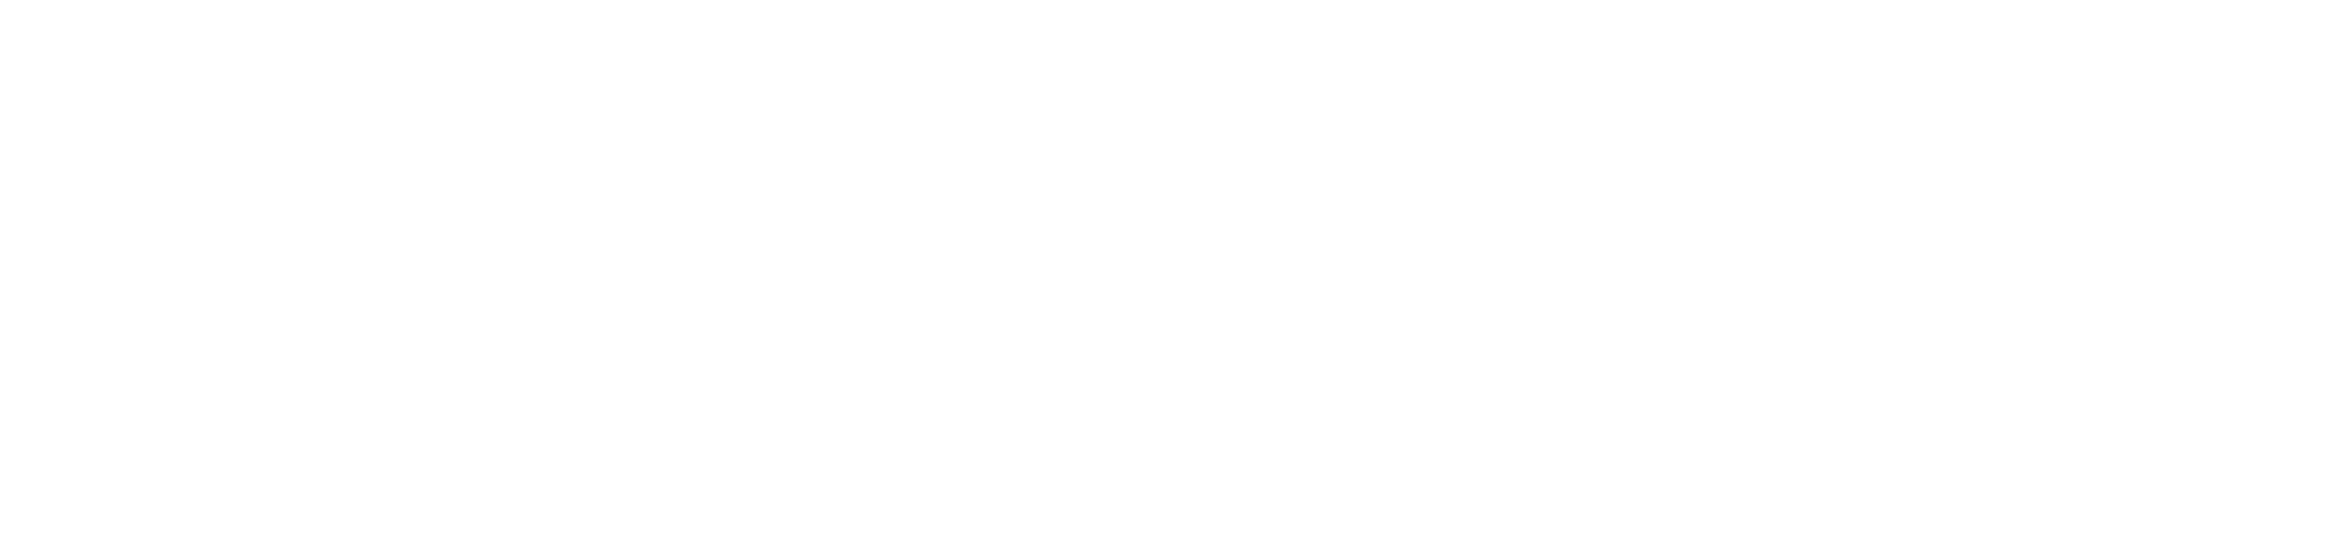 Motorola Logo Transparent Free PNG